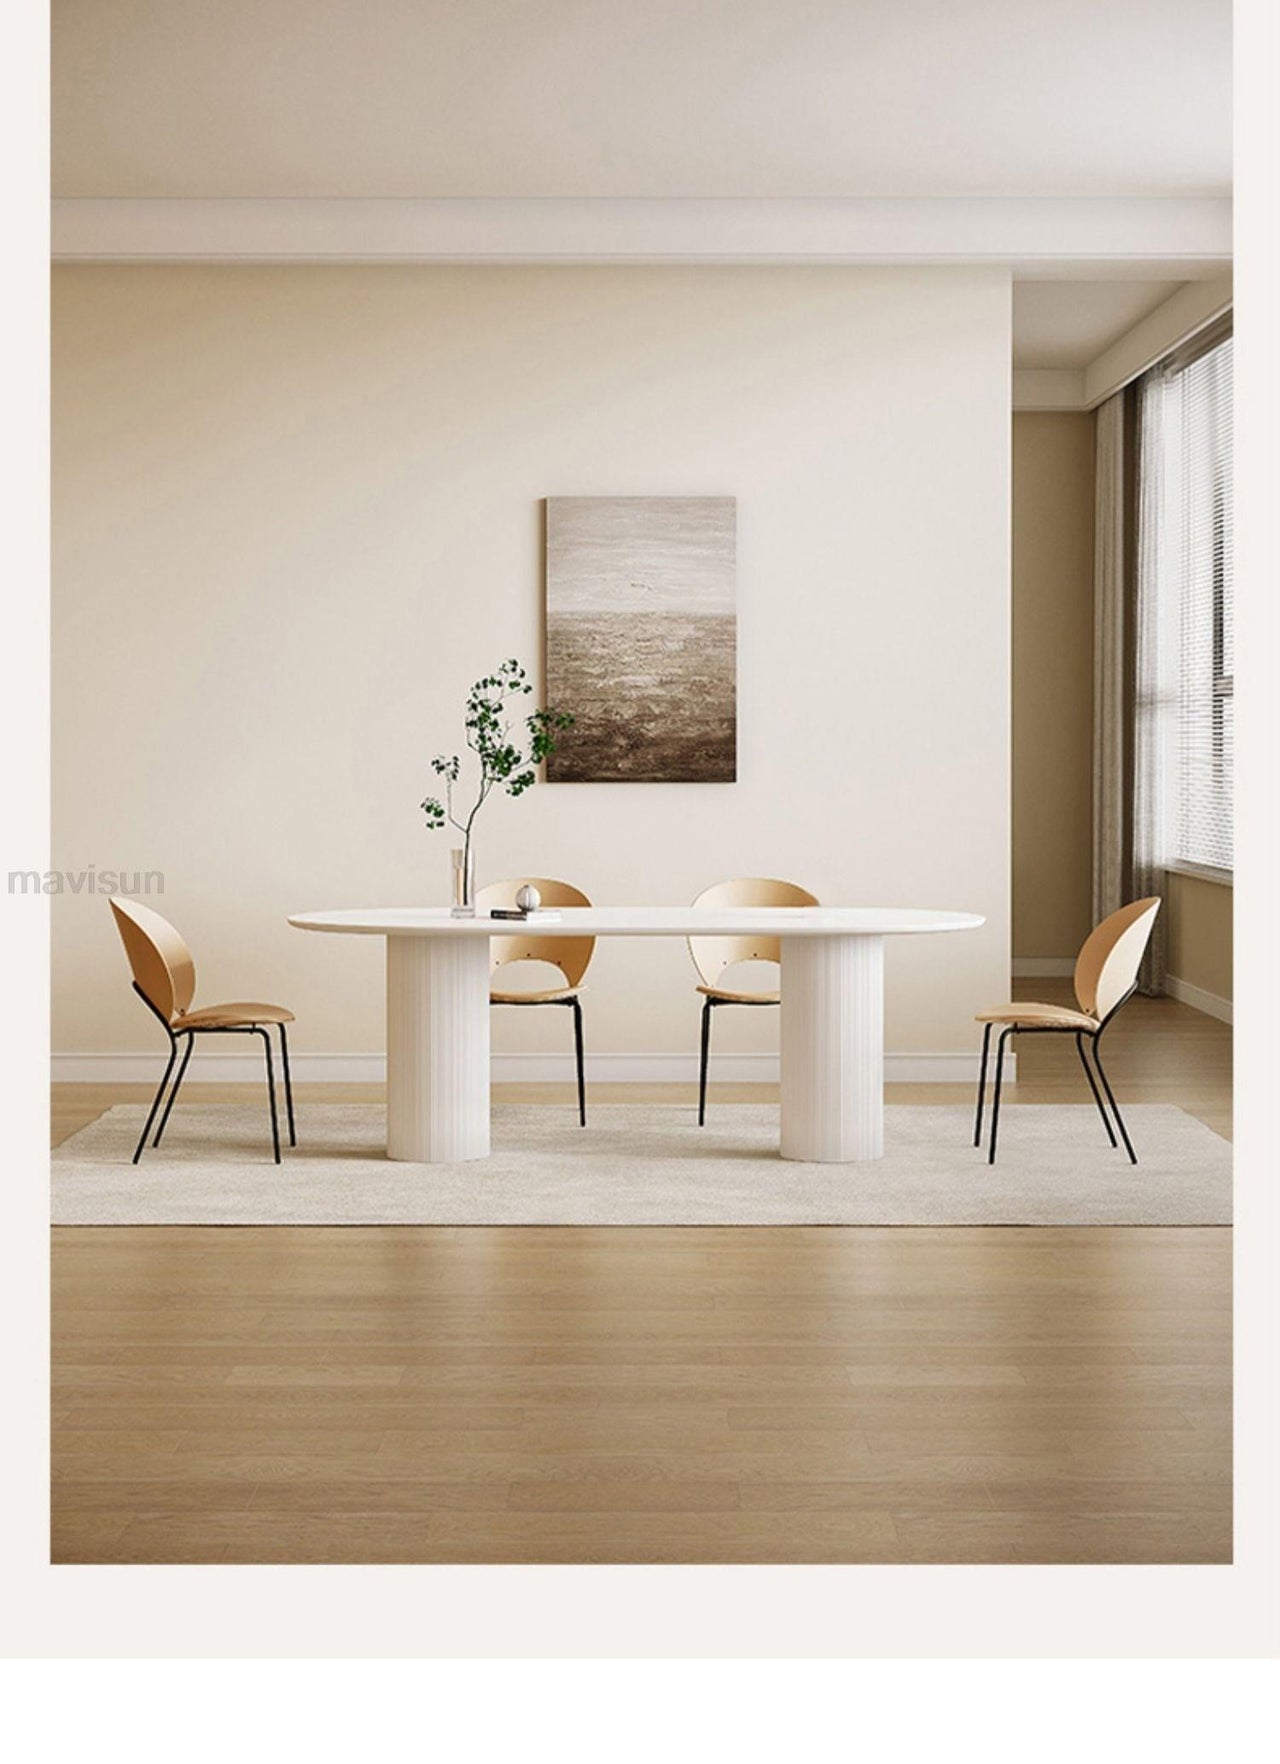 Minimalist Kitchen Furniture with Chair